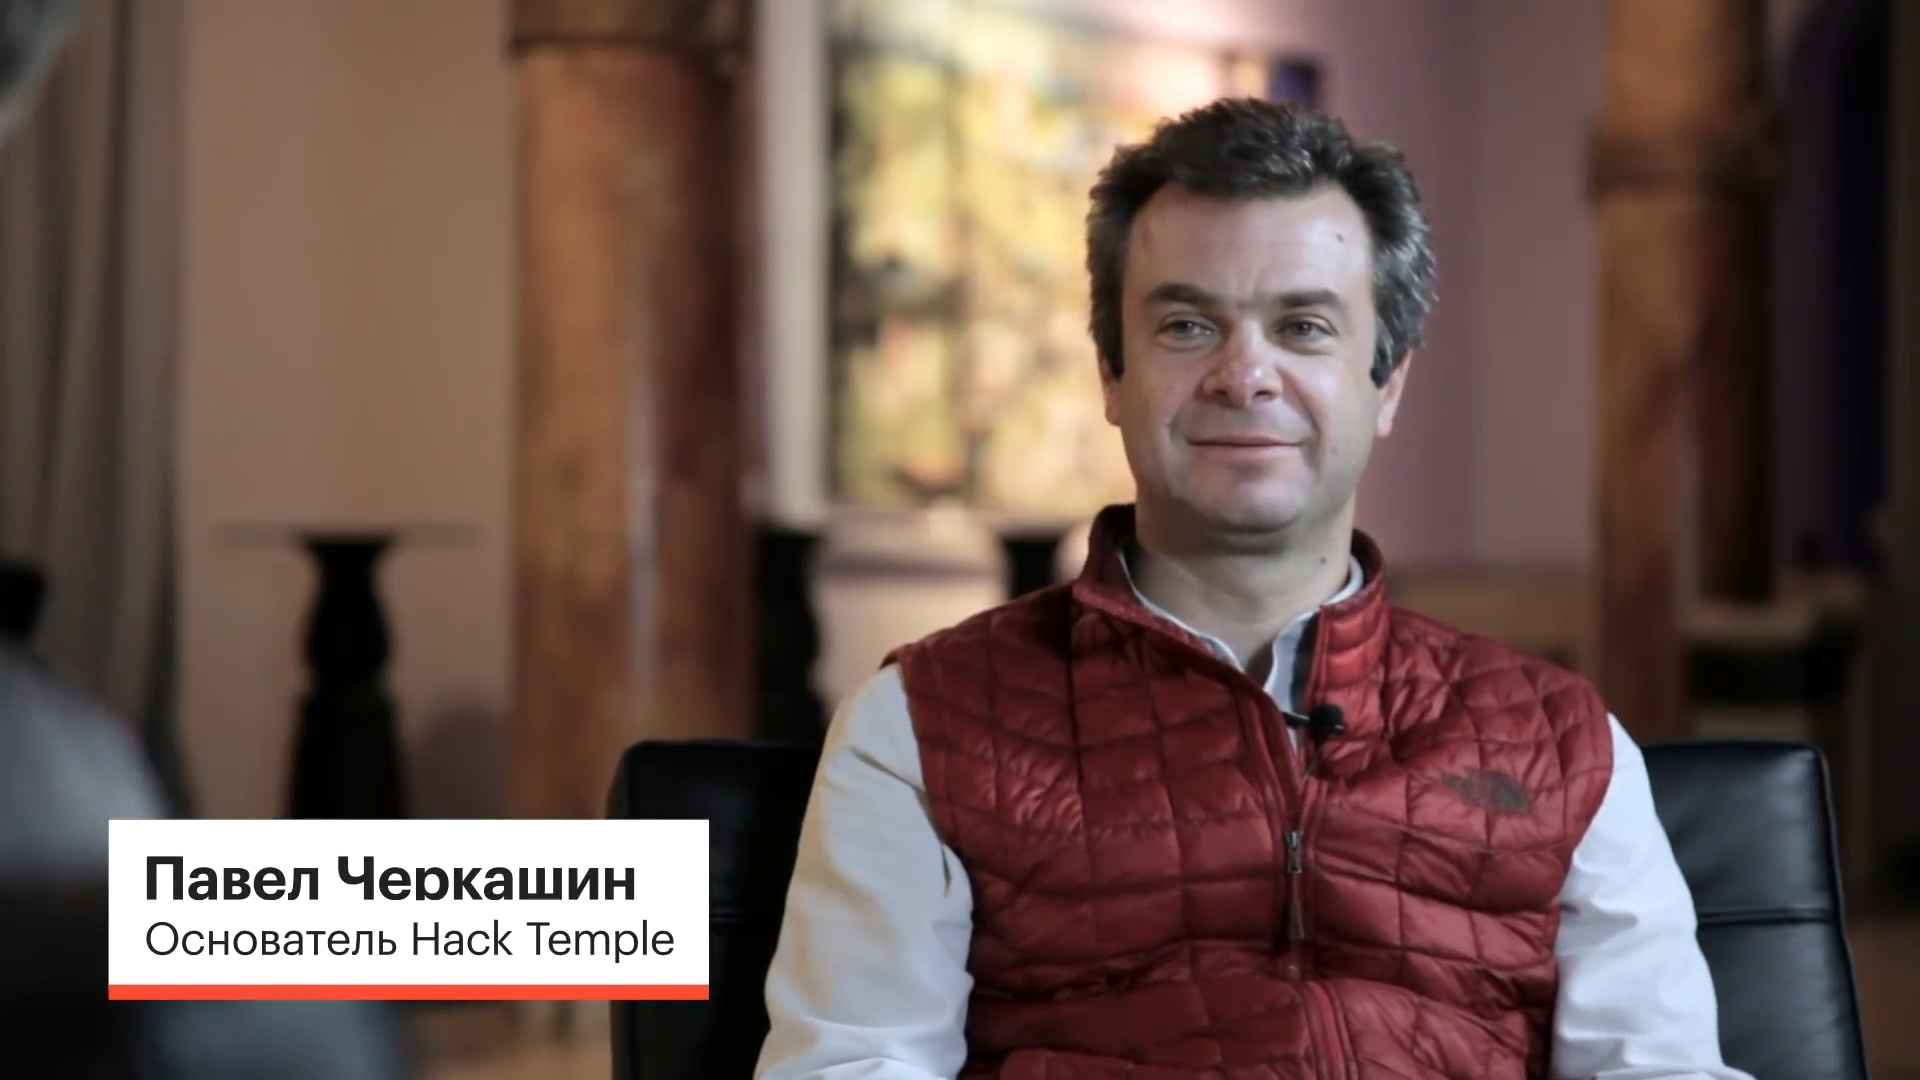 Павел Черкашин - основатель бизнес-акселератора Hack Temple